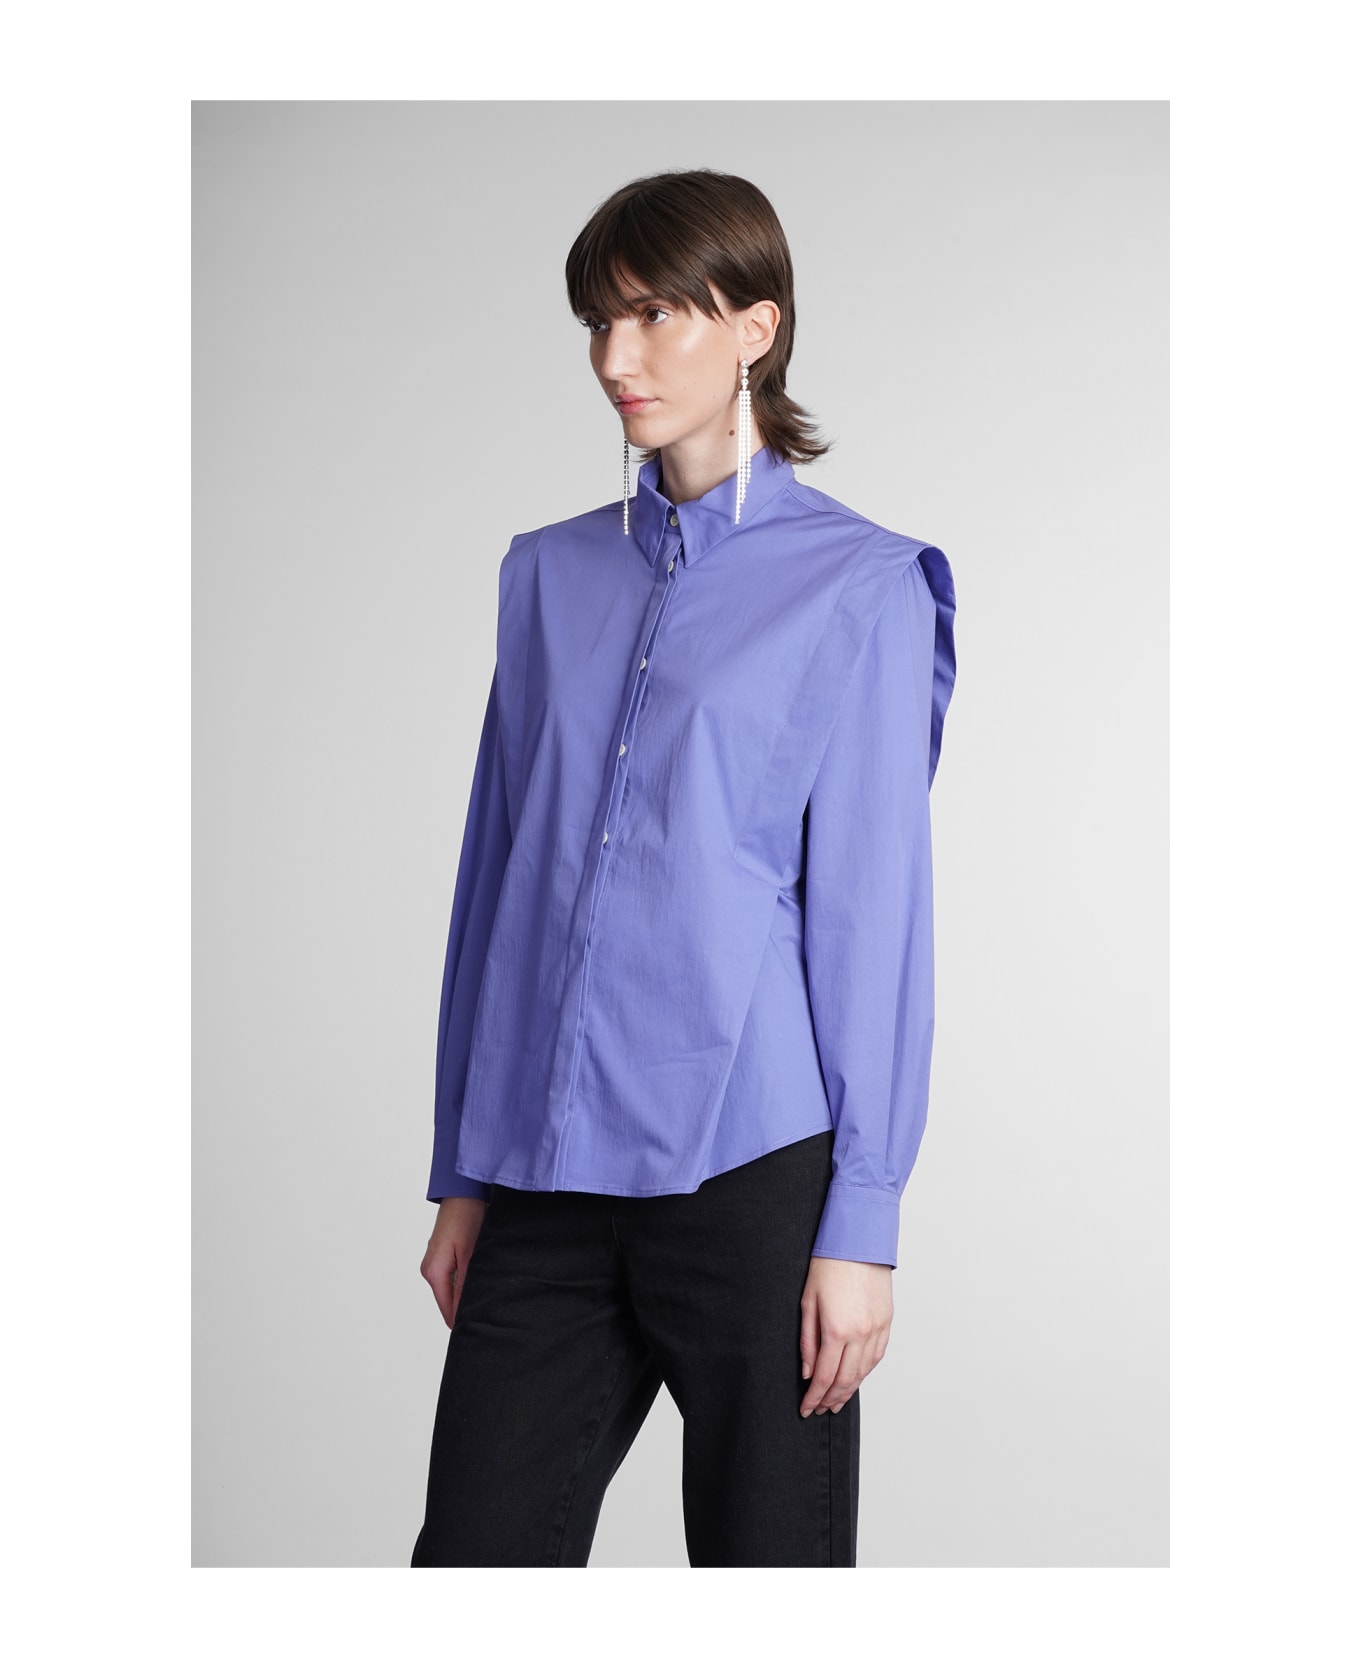 Isabel Marant Sotalki Shirt In Viola Cotton - Viola